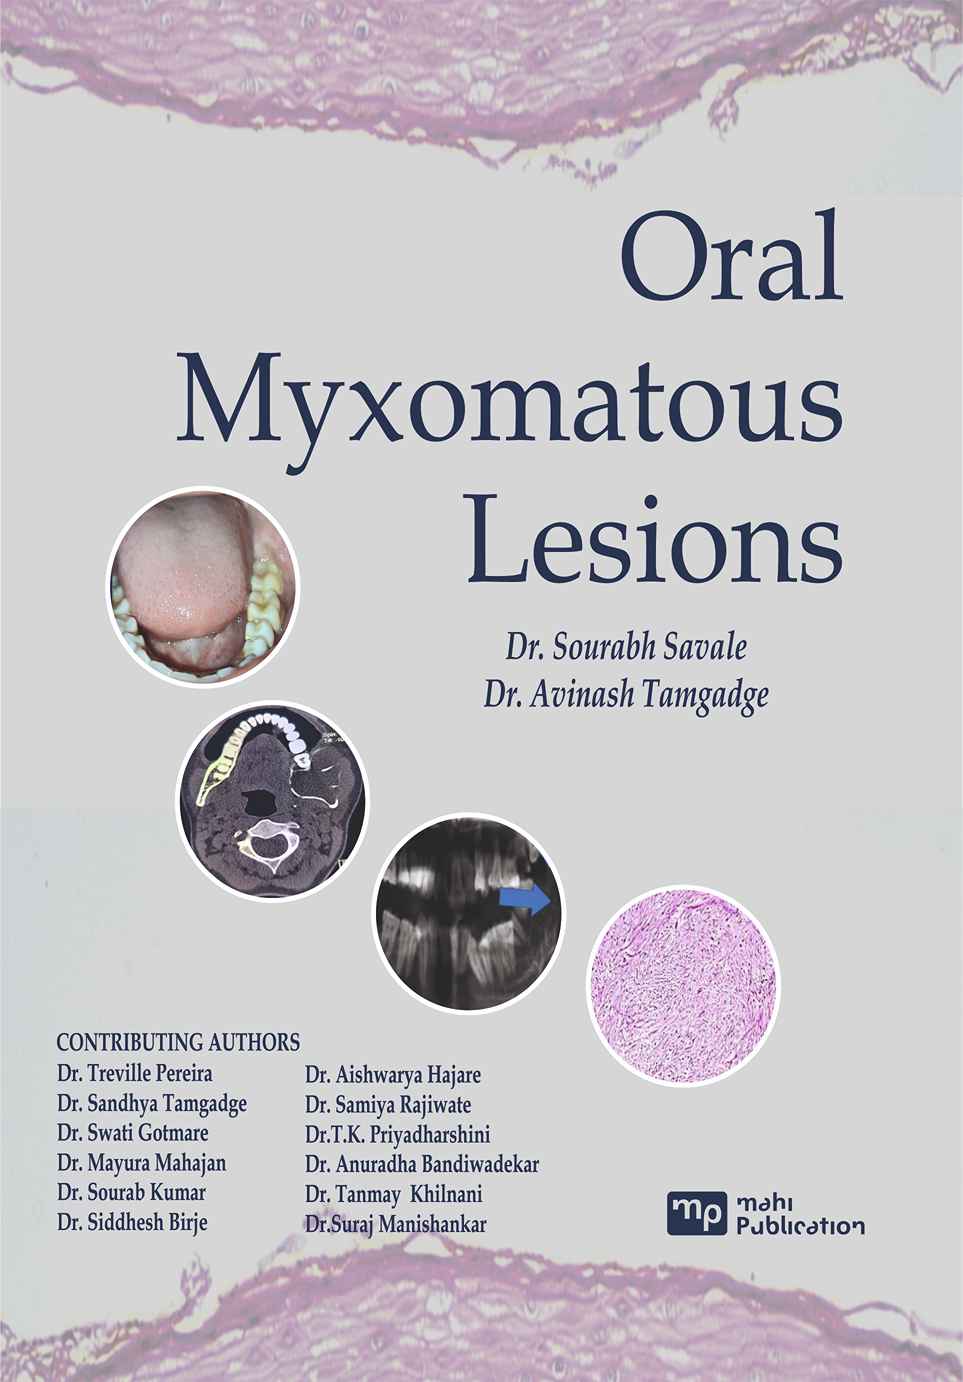 Oral Myxomatous Lesions